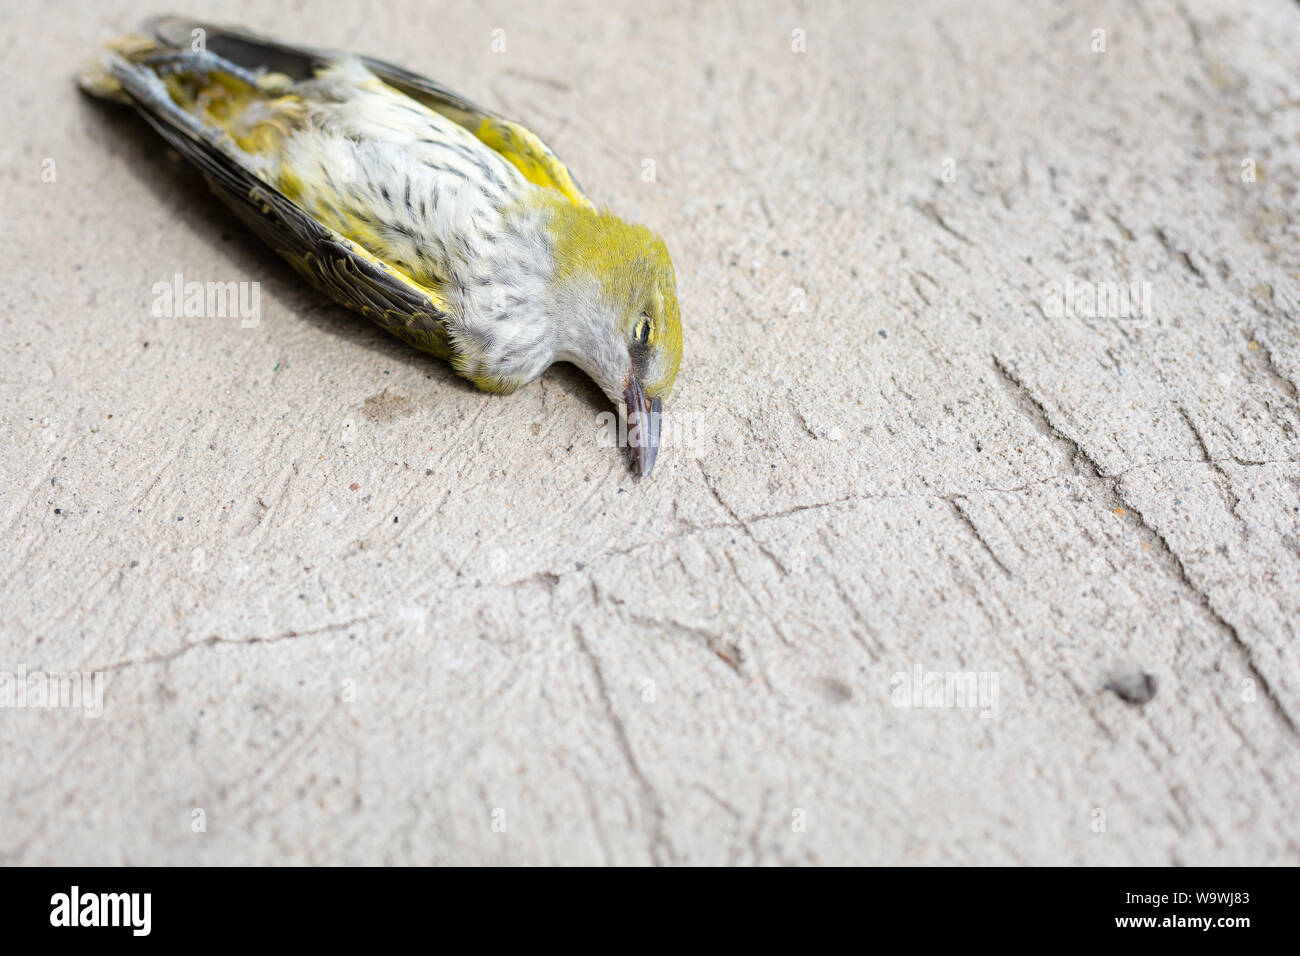 Eurasian golden oriole dead bird (Oriolus oriolus) or simply golden oriole on gray concrete Stock Photo